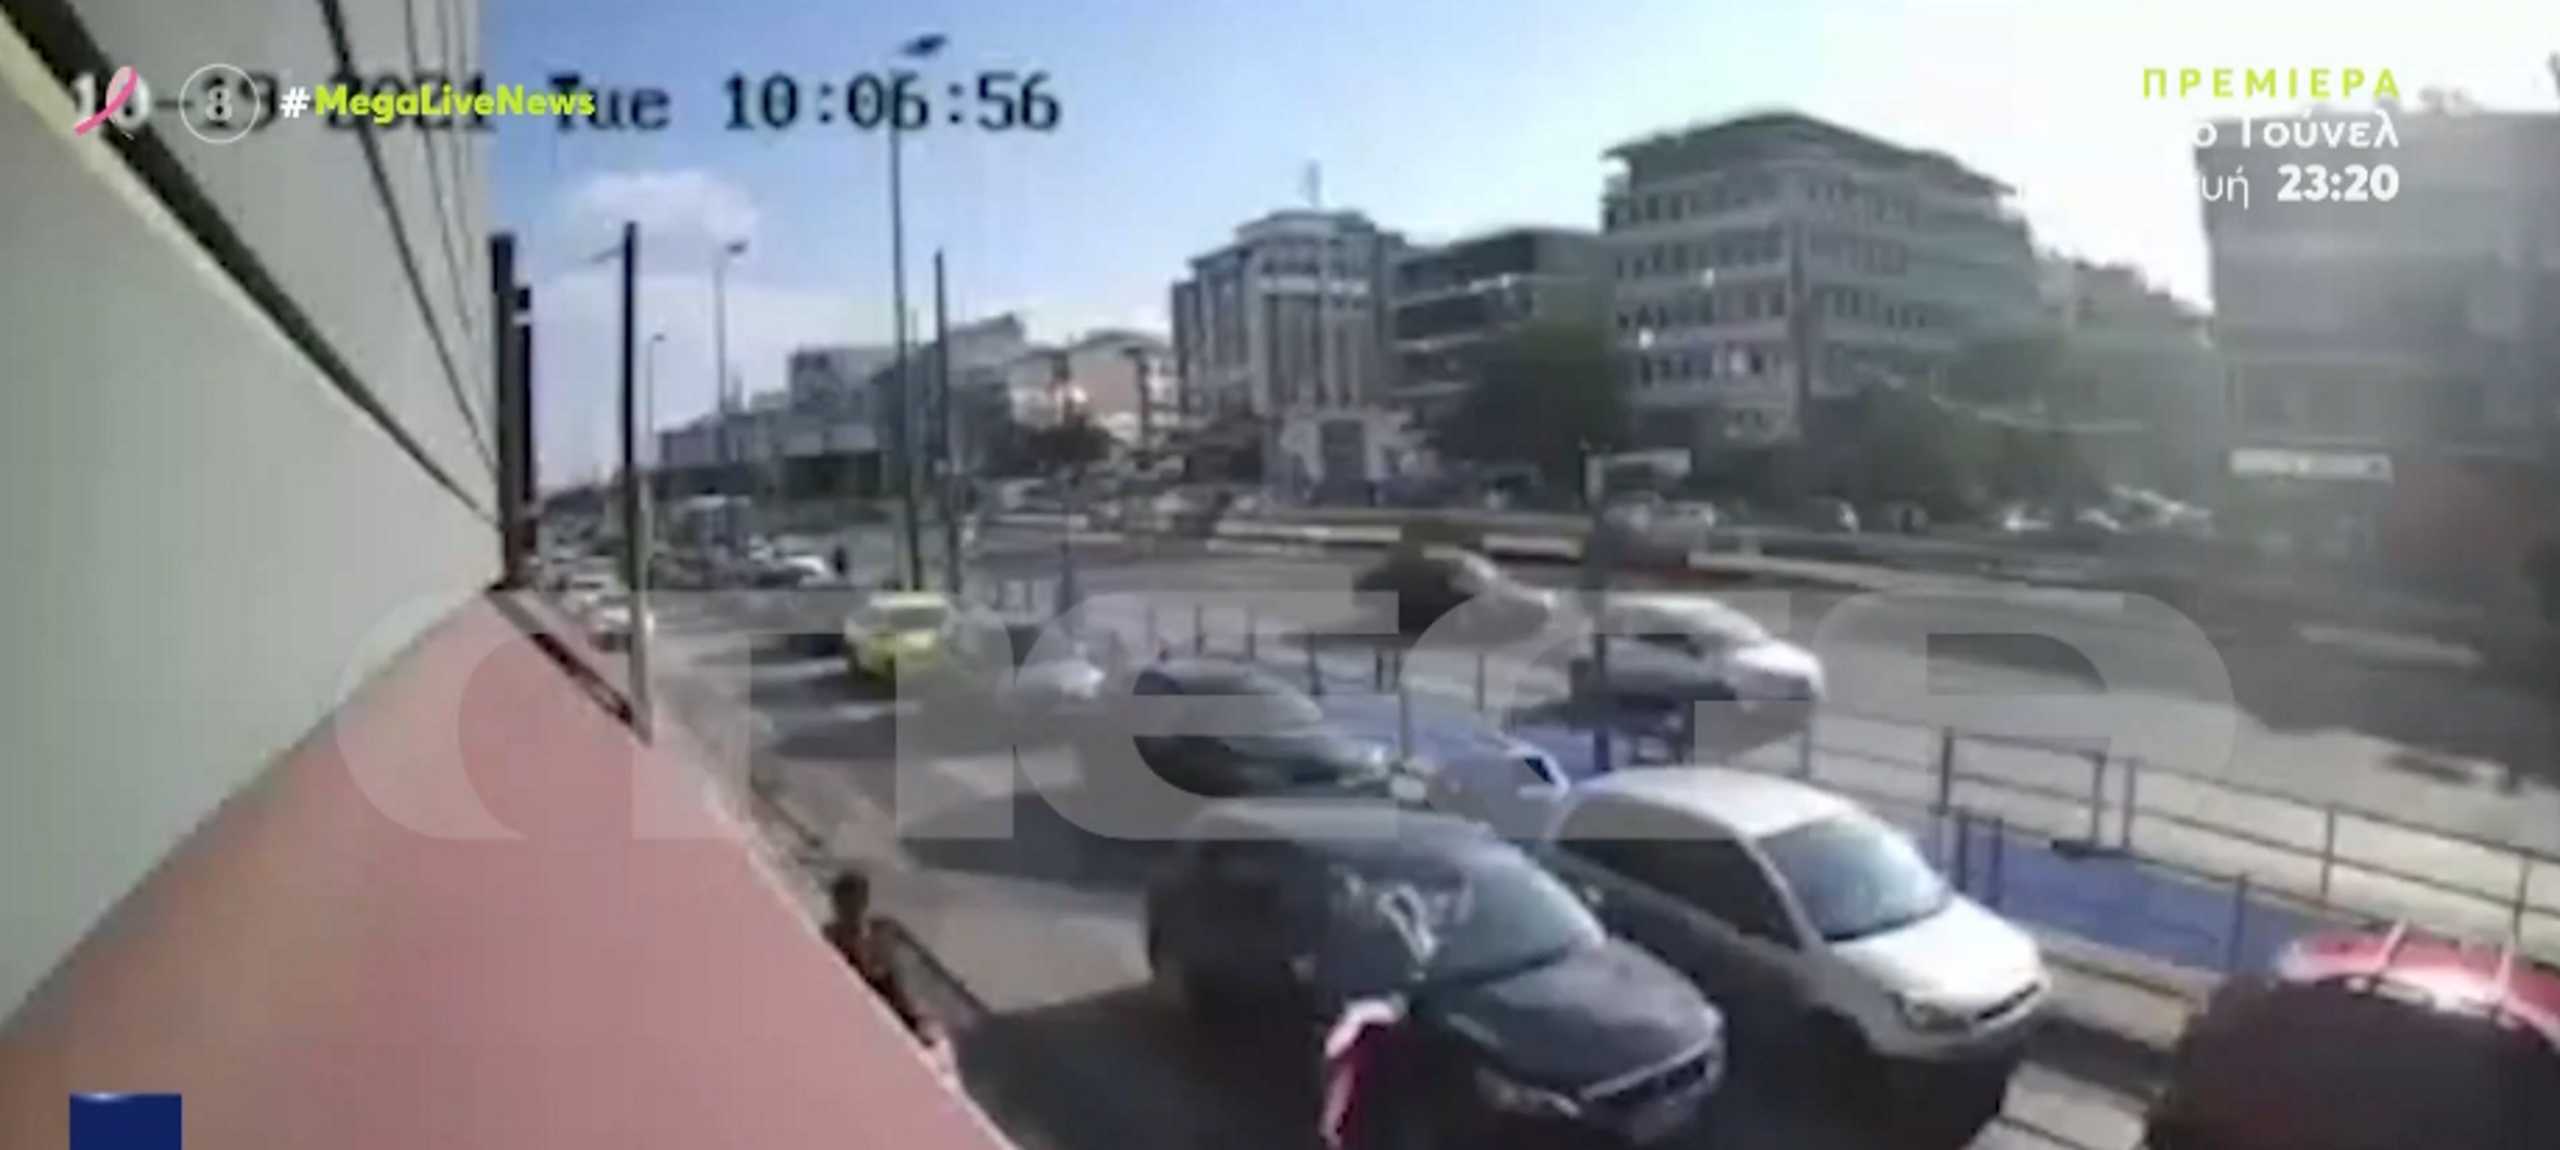 Βίντεο ντοκουμέντο δείχνει αυτοκίνητο να παρασύρει πεζή σε παράδρομο της Συγγρού – Σώθηκε από θαύμα